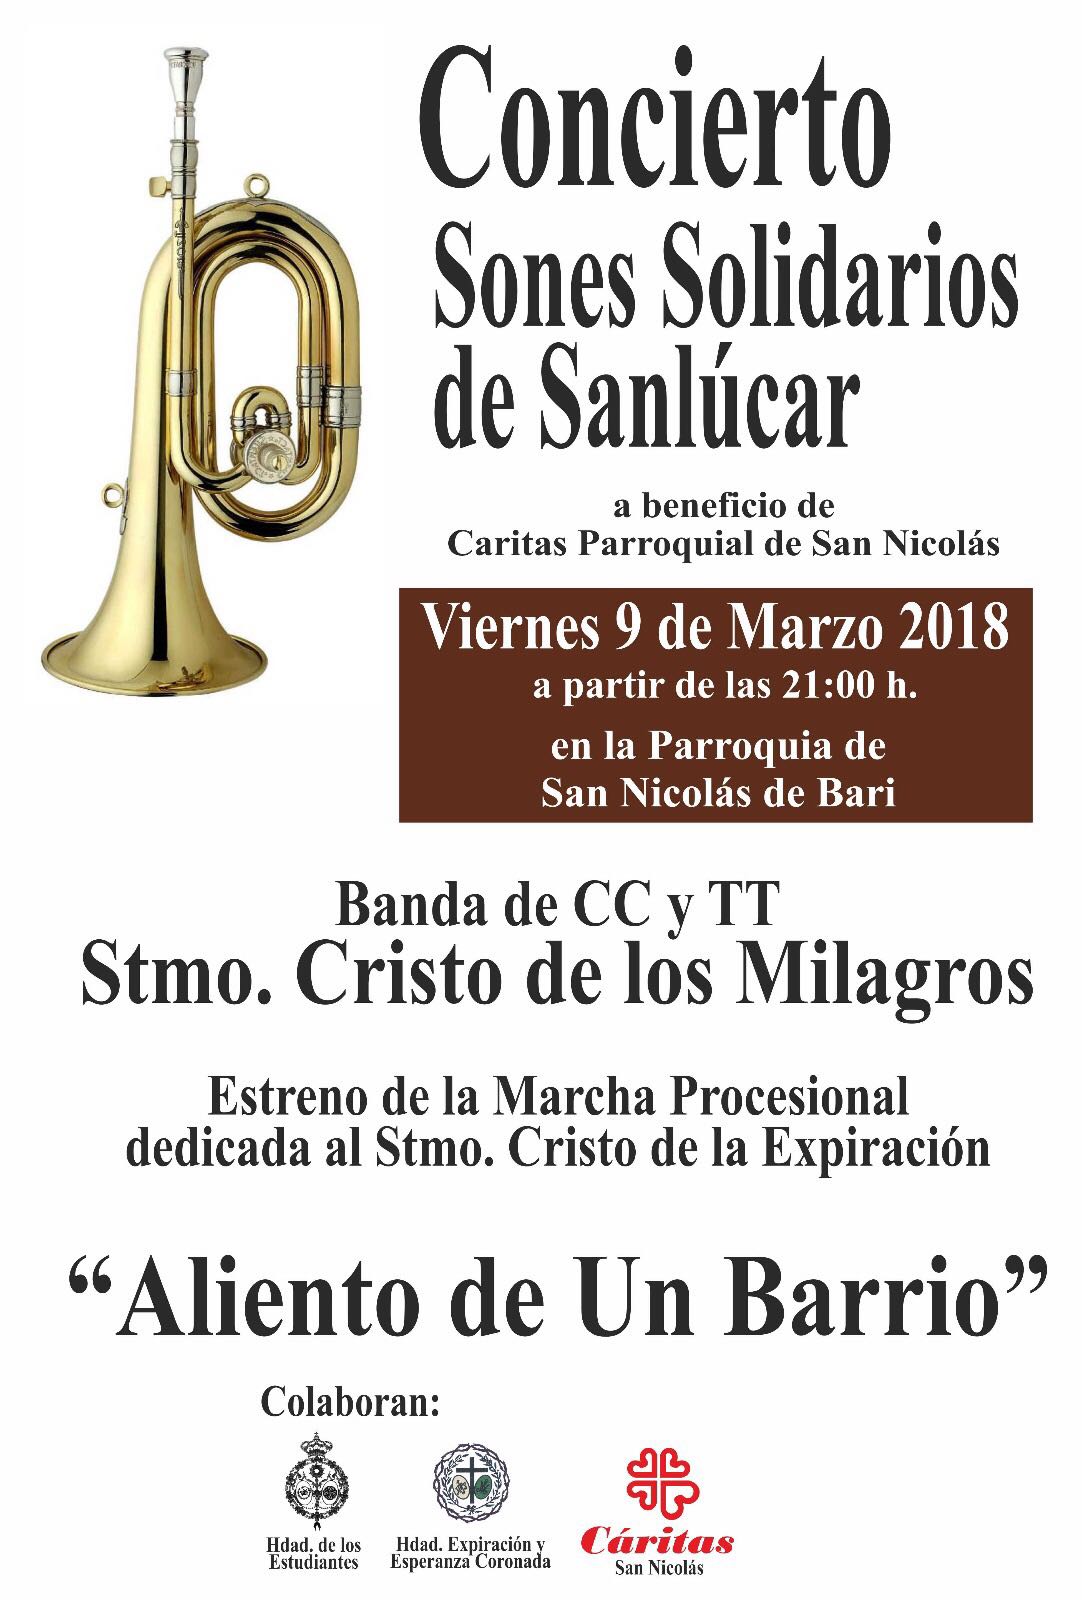 Concierto Sones Solidarios de Sanlcar